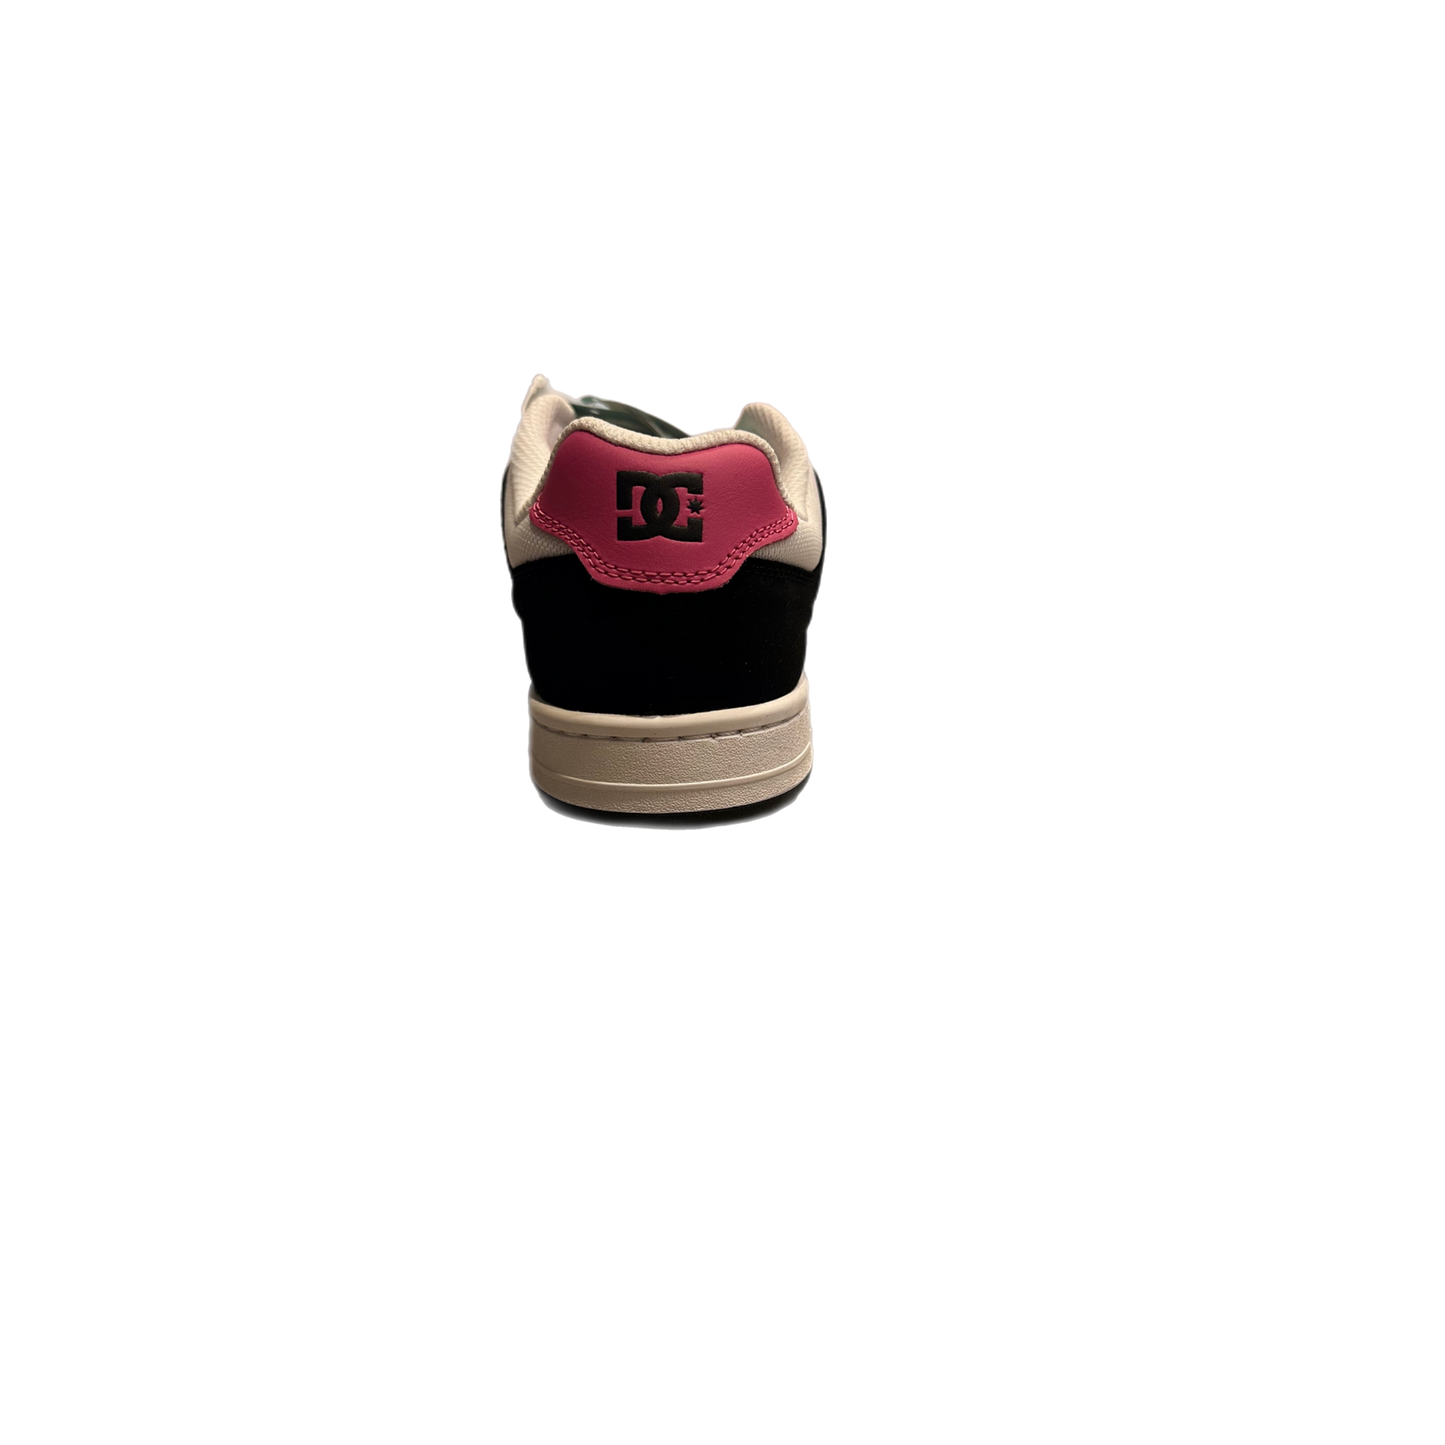 DC - "Manteca 4 Black Pink" - Size 7.5